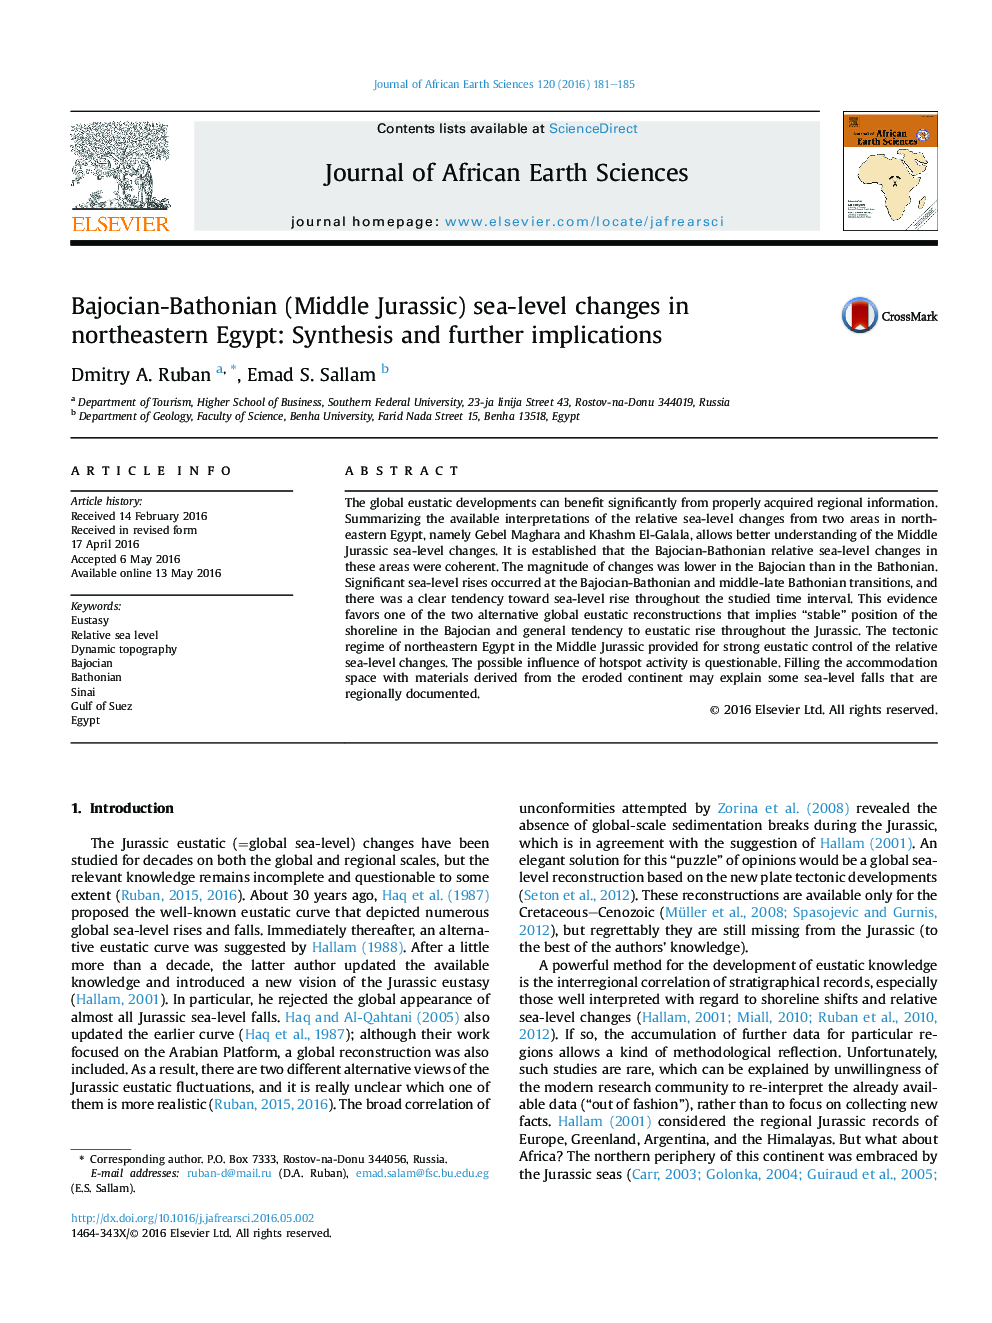 تغییرات سطح دریا Bajocian-Bathonian (Middle Jurassic) در شمال شرقی مصر: سنتز و پیامدهای بعدی